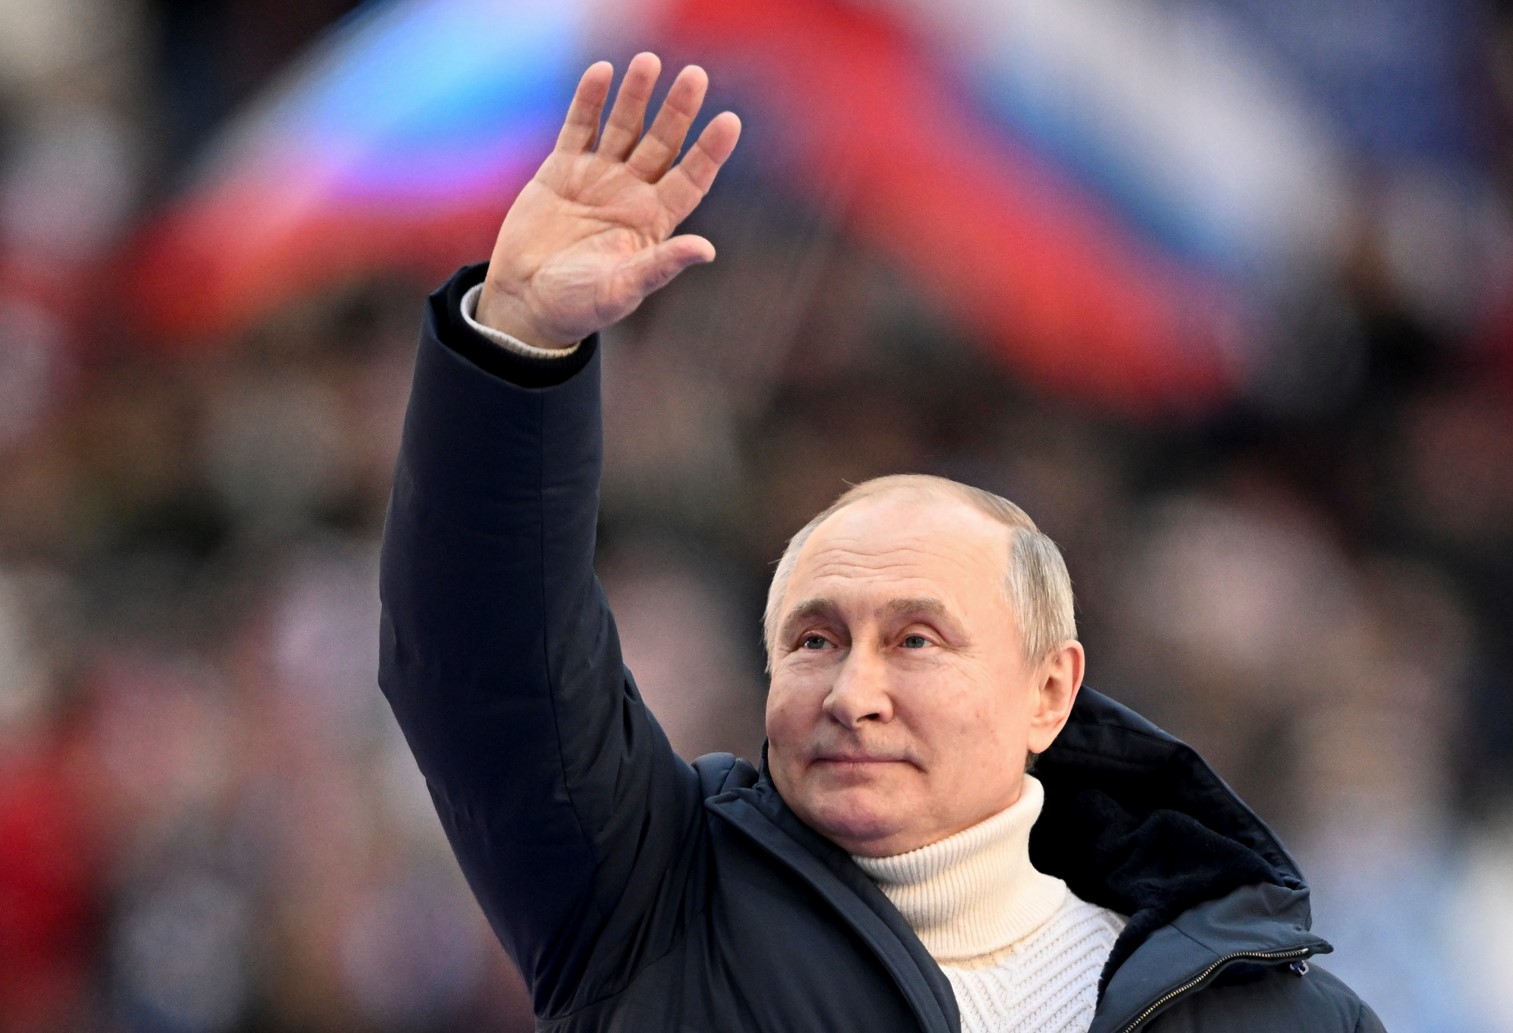 Великобритания санкционира бившата жена и любовницата на Путин